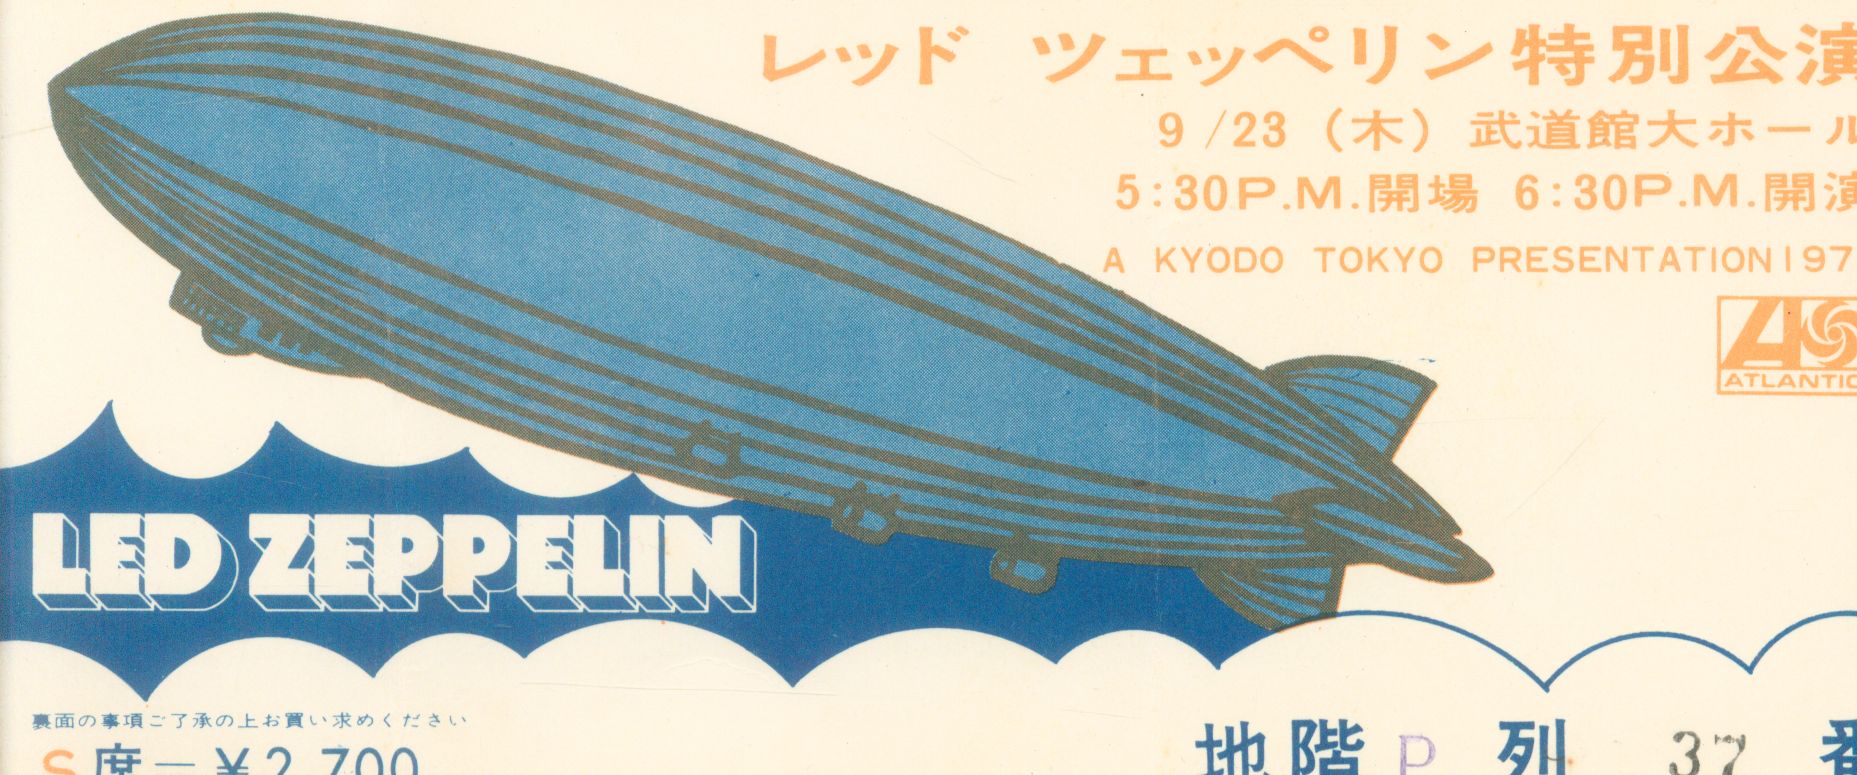 レッド・ツェッペリン/LED ZEPPELIN 1971年初来日公演チケット半券